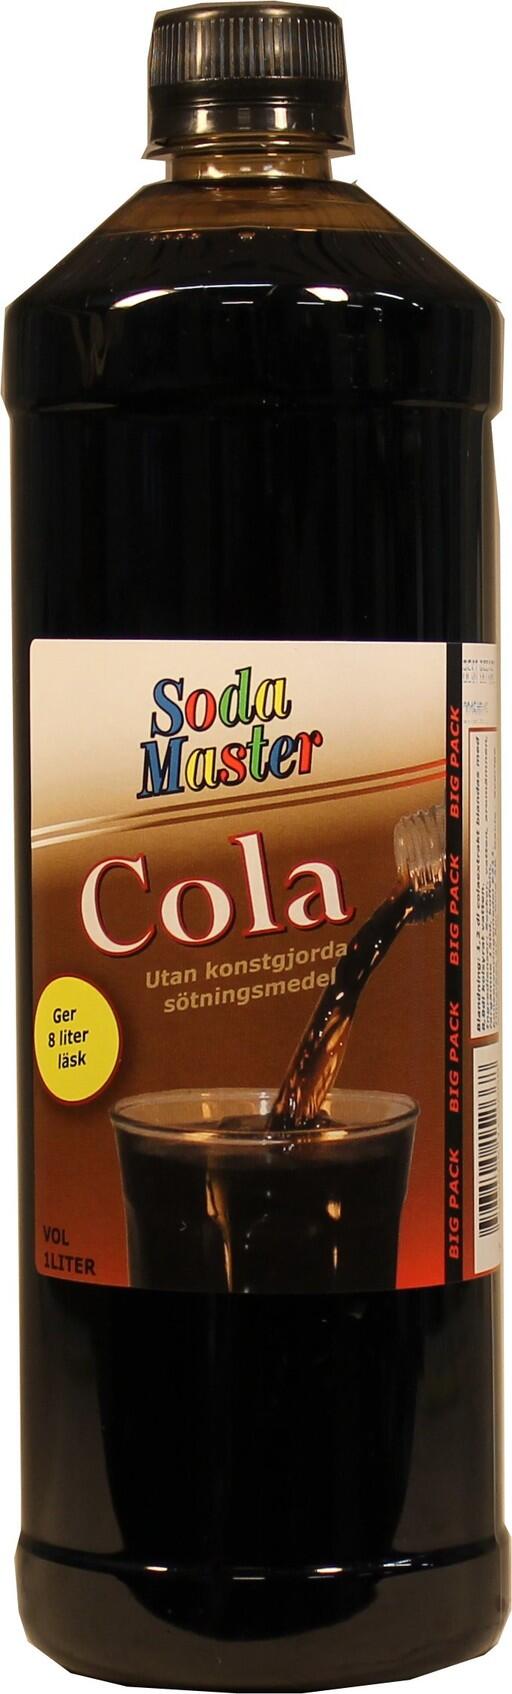 Cola läskkoncentrat från Soda Master.